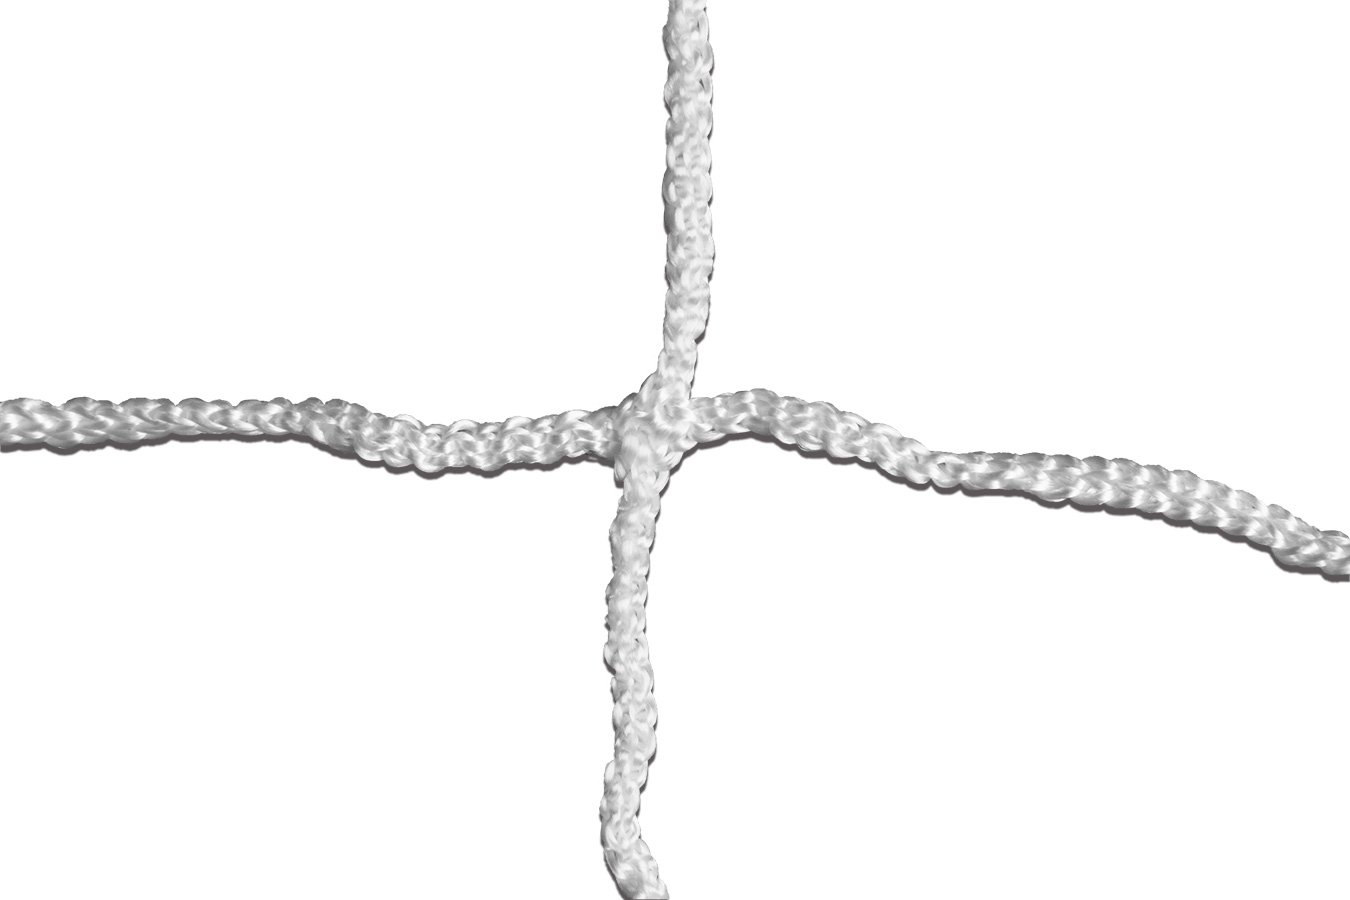 Kwikgoal 3mm Braided Knotless Net | 3B6824 Nets Kwikgoal 